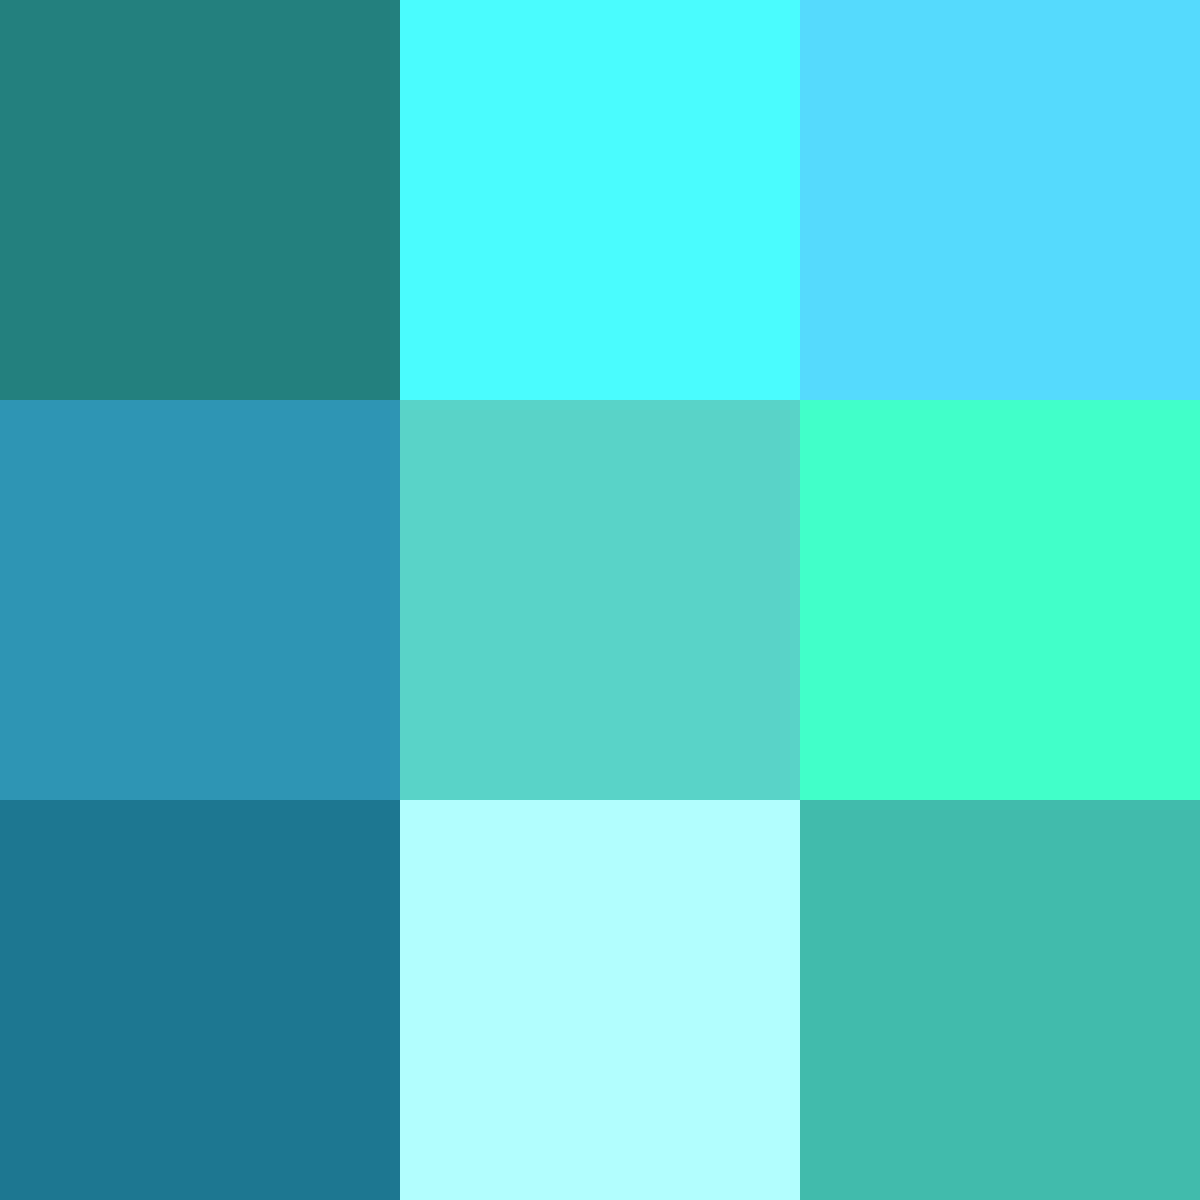  装飾におけるティファニー・ブルー：この色を使ったアイデアと実例